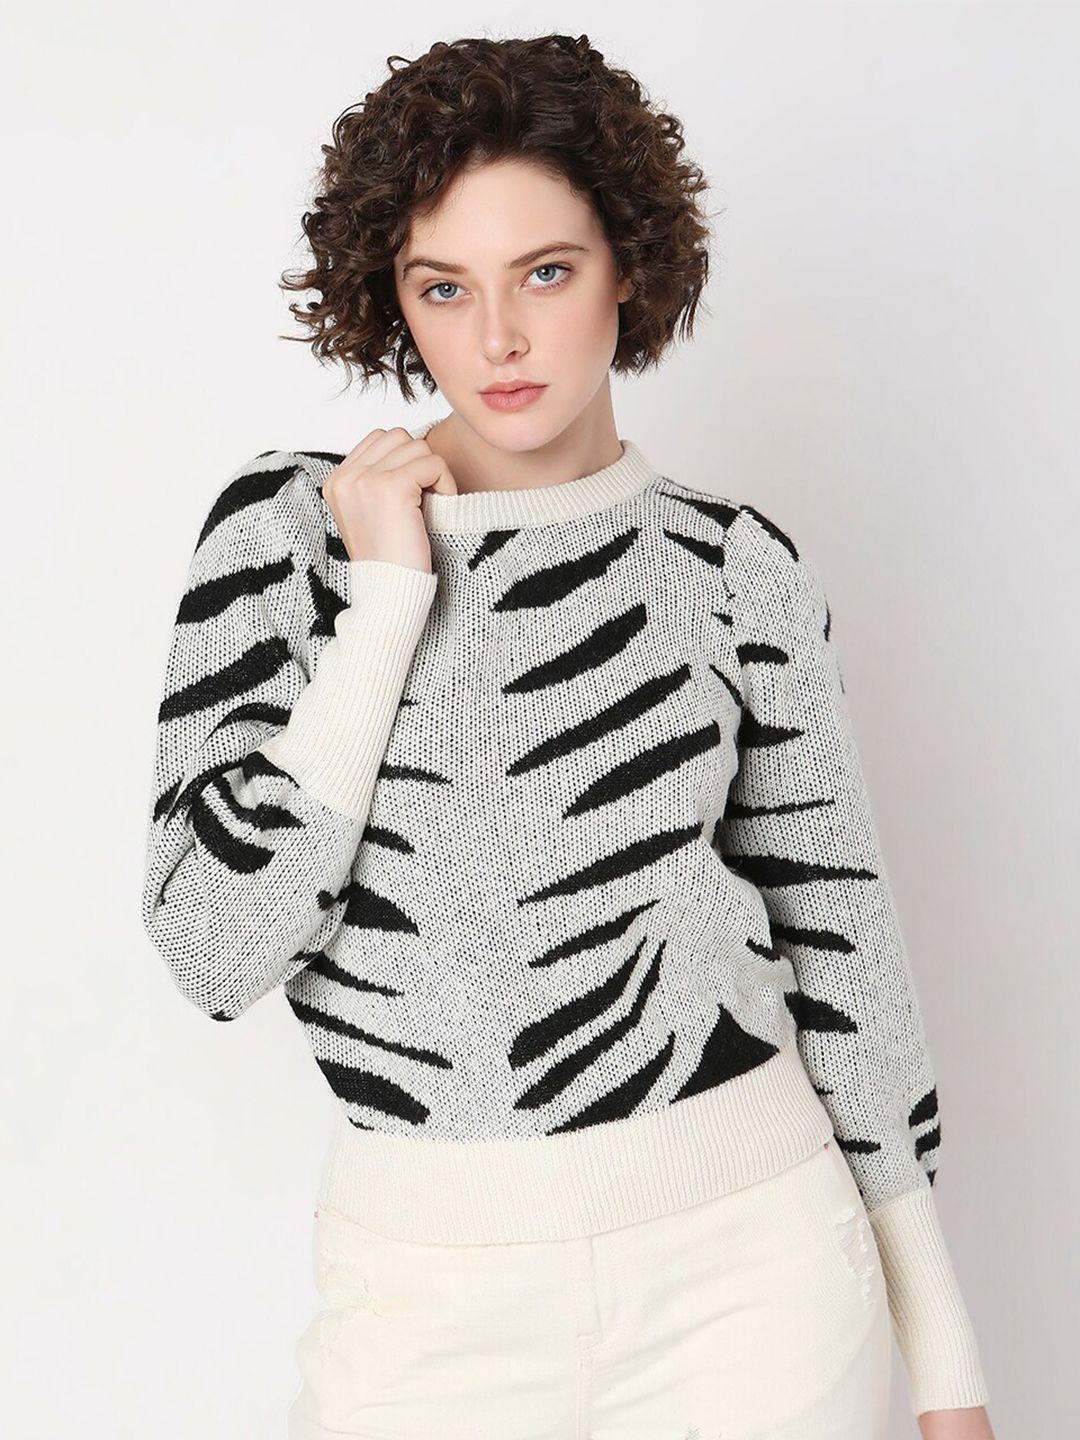 vero moda abstract printed pullover